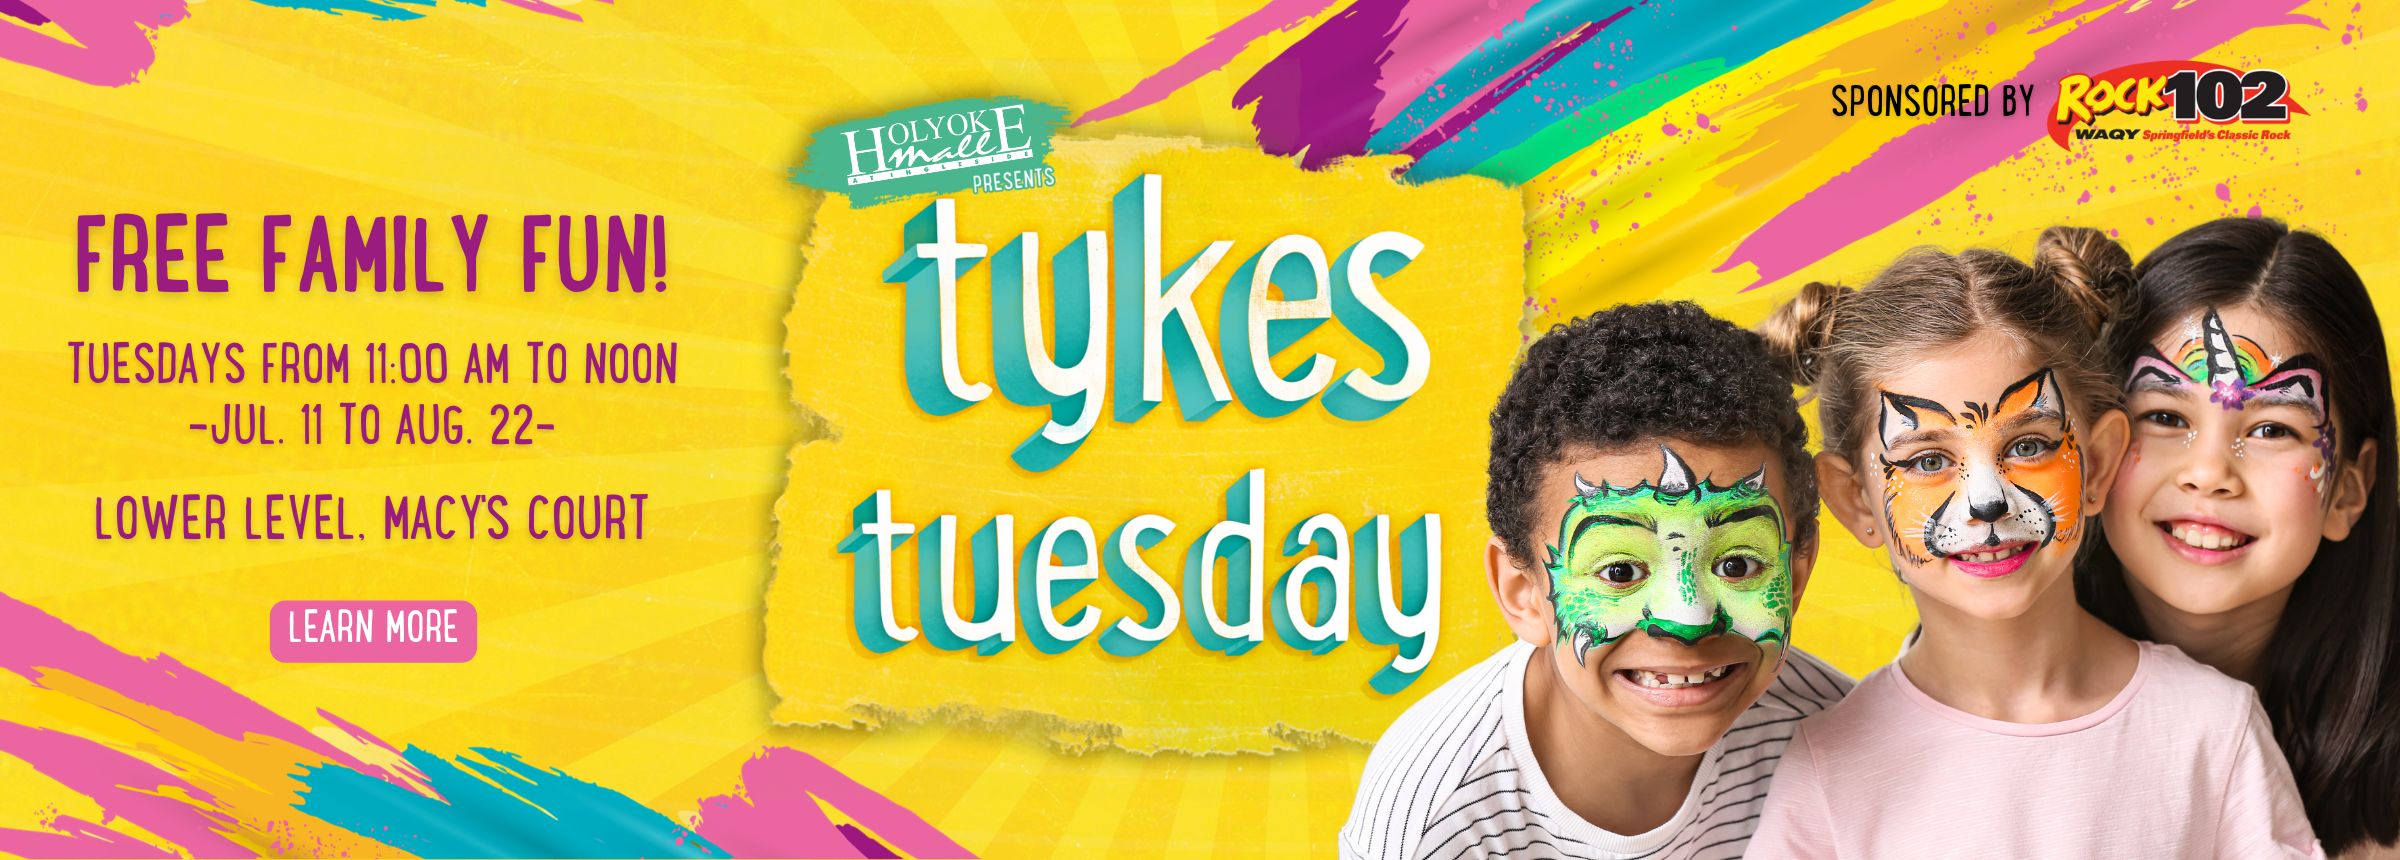 Tykes Tuesday at Holyoke Mall